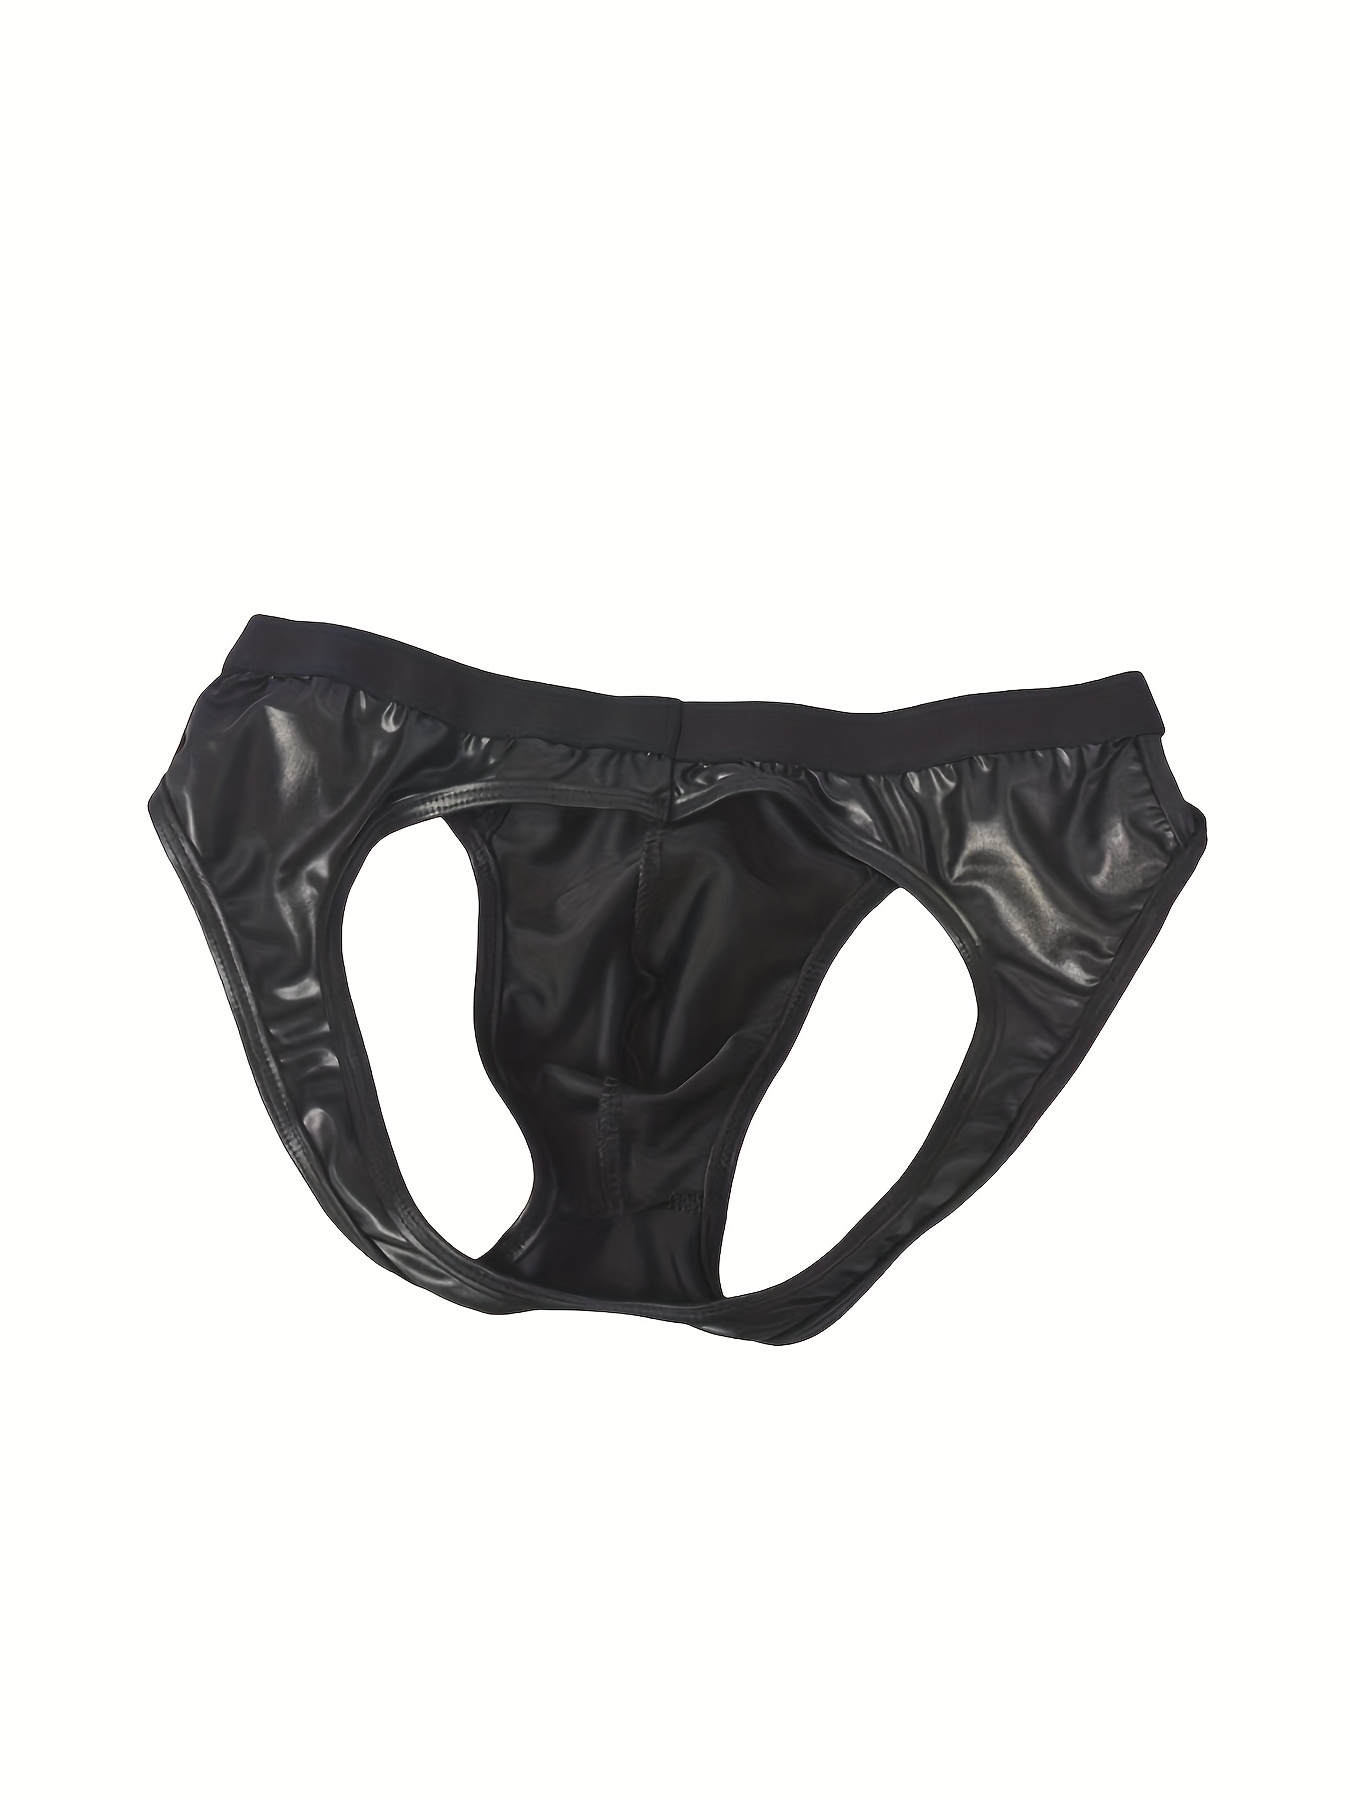 Men Leather Jockstrap Underwear Briefs Thong Adjustable Waist Men